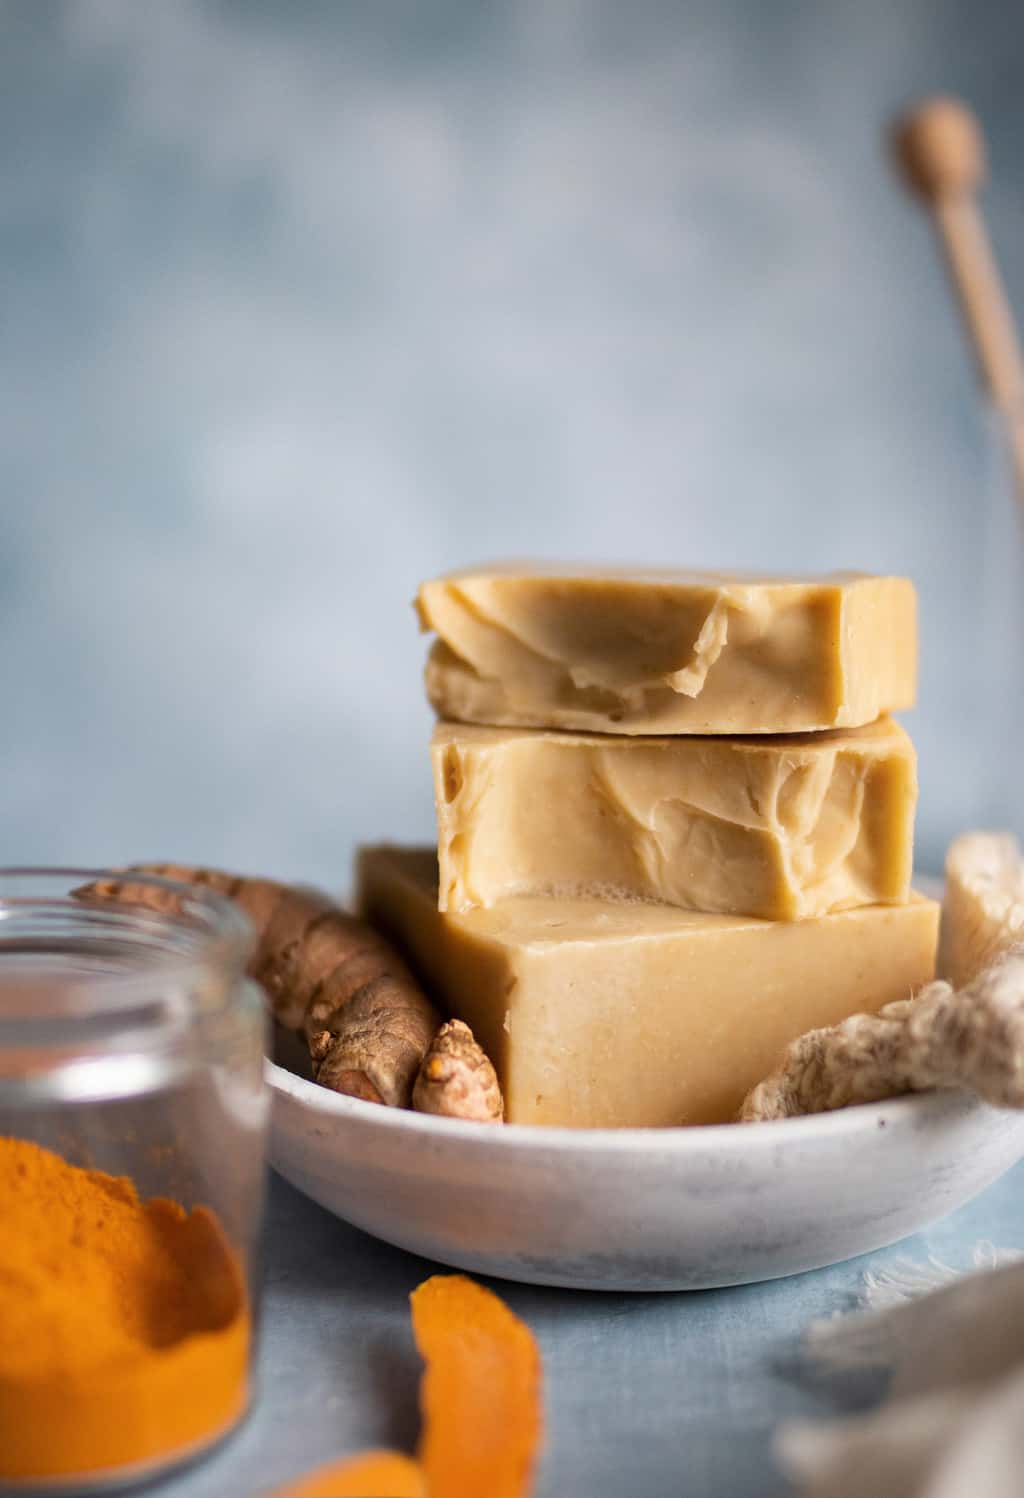 Ce savon au curcuma traité à froid est chargé de graisses nourrissantes et infusé de curcuma, de miel brut et d'hamamélis pour nettoyer de la tête aux pieds.